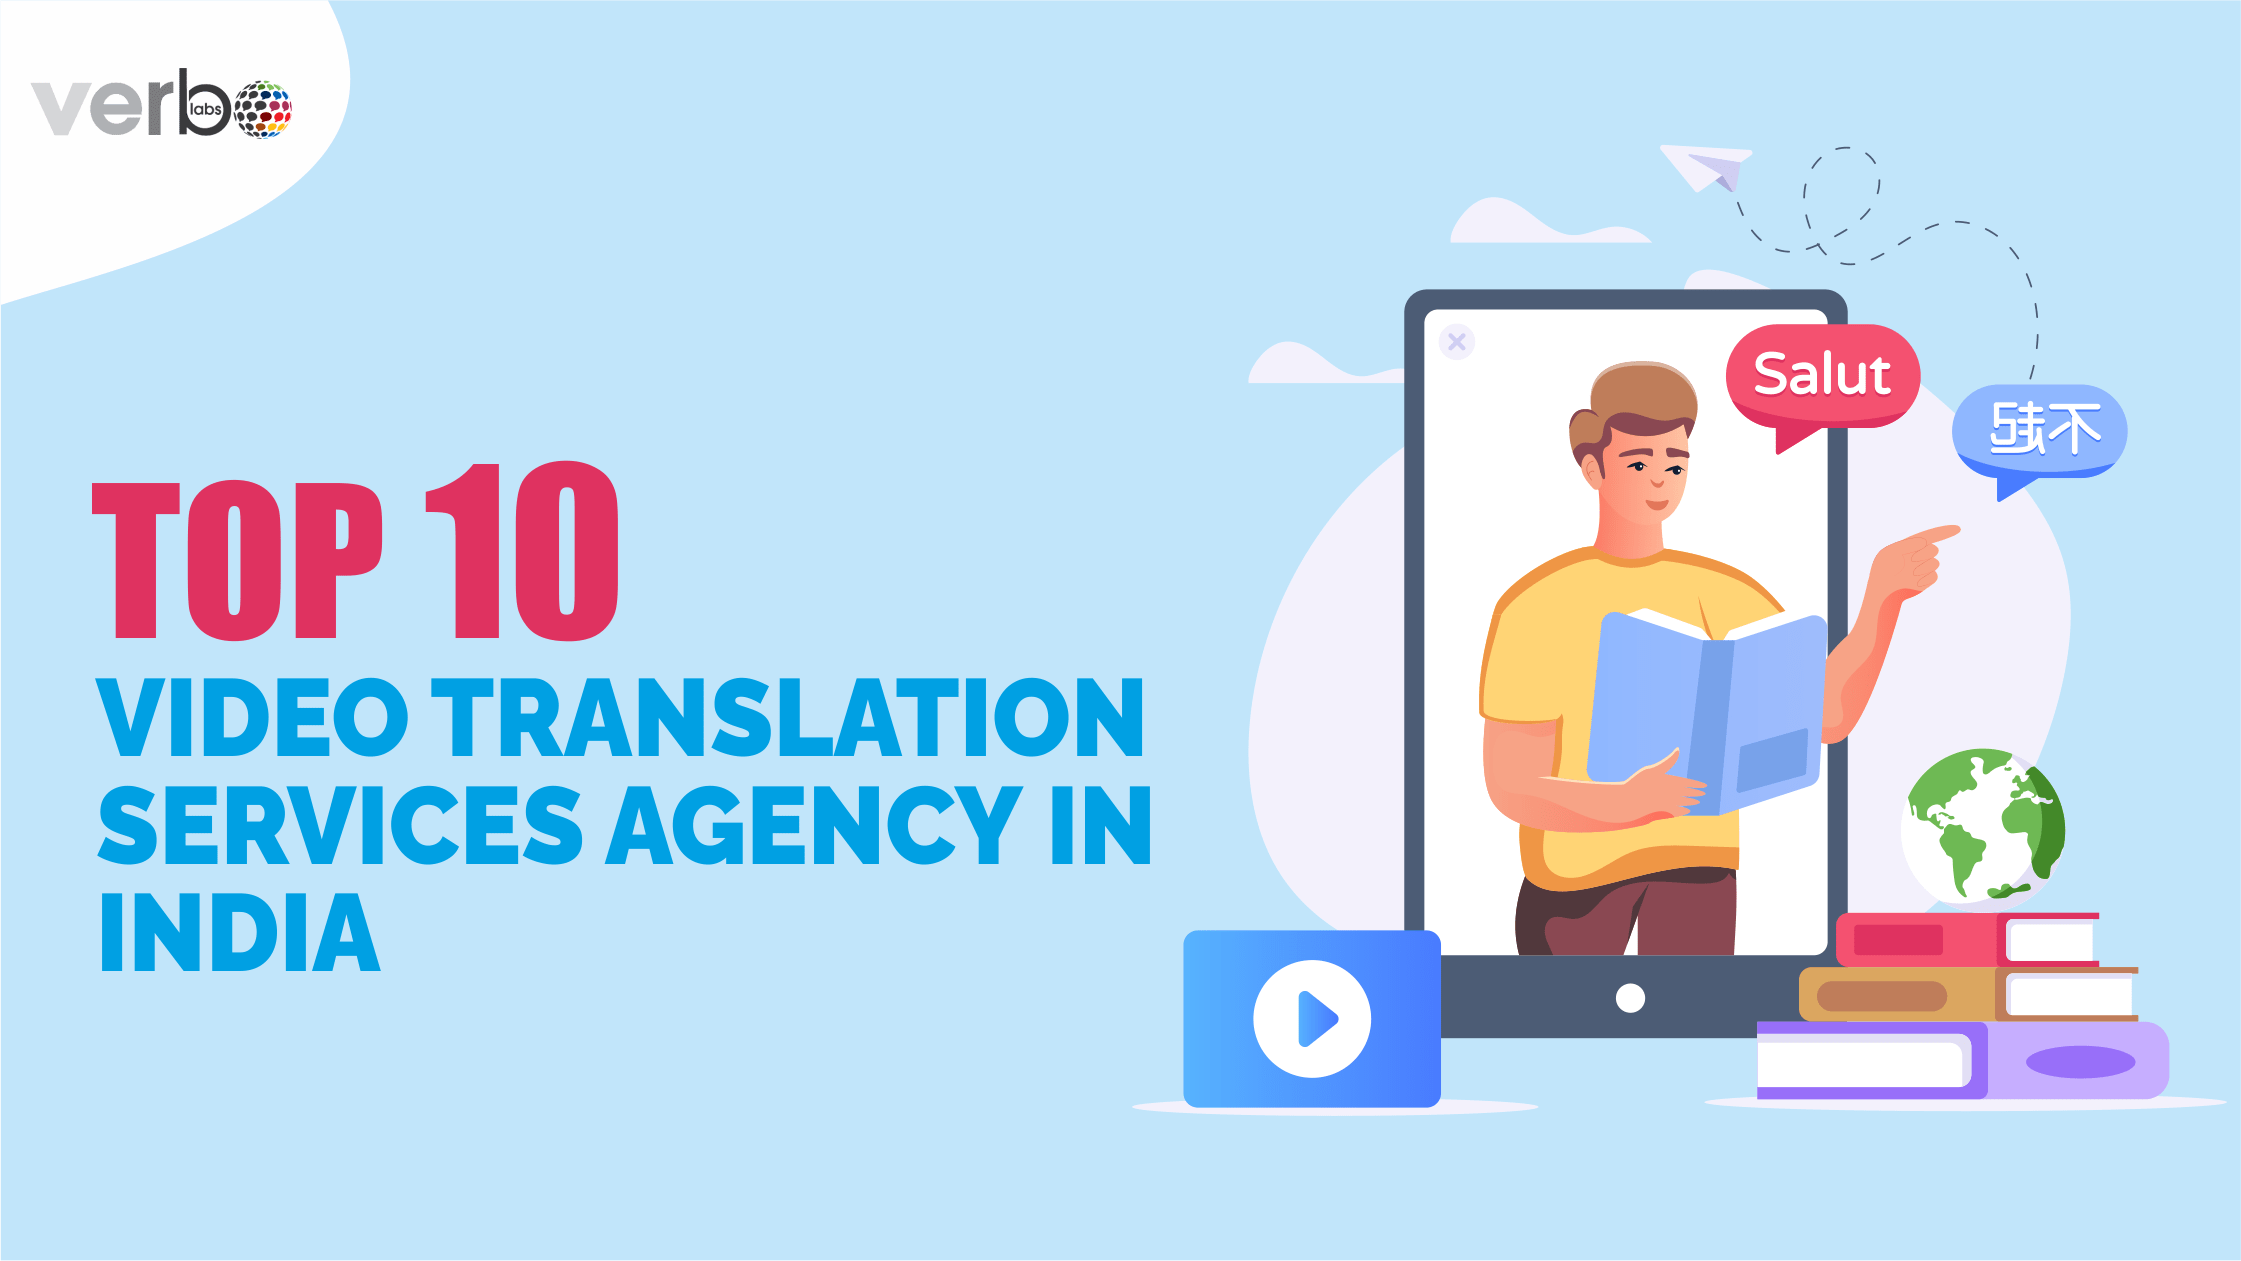 Video translation service